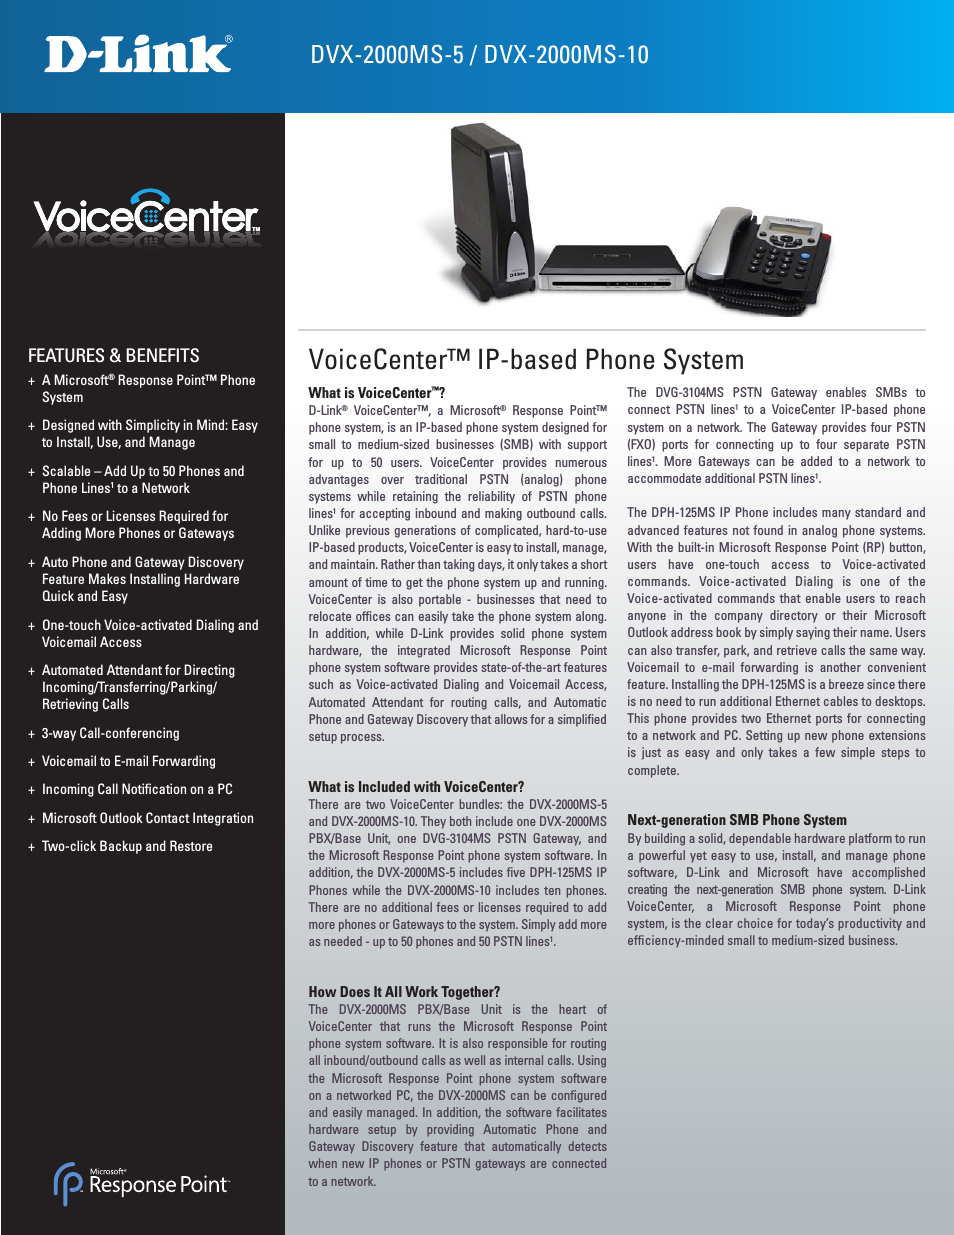 VoiceCenter DVX-2000MS-10